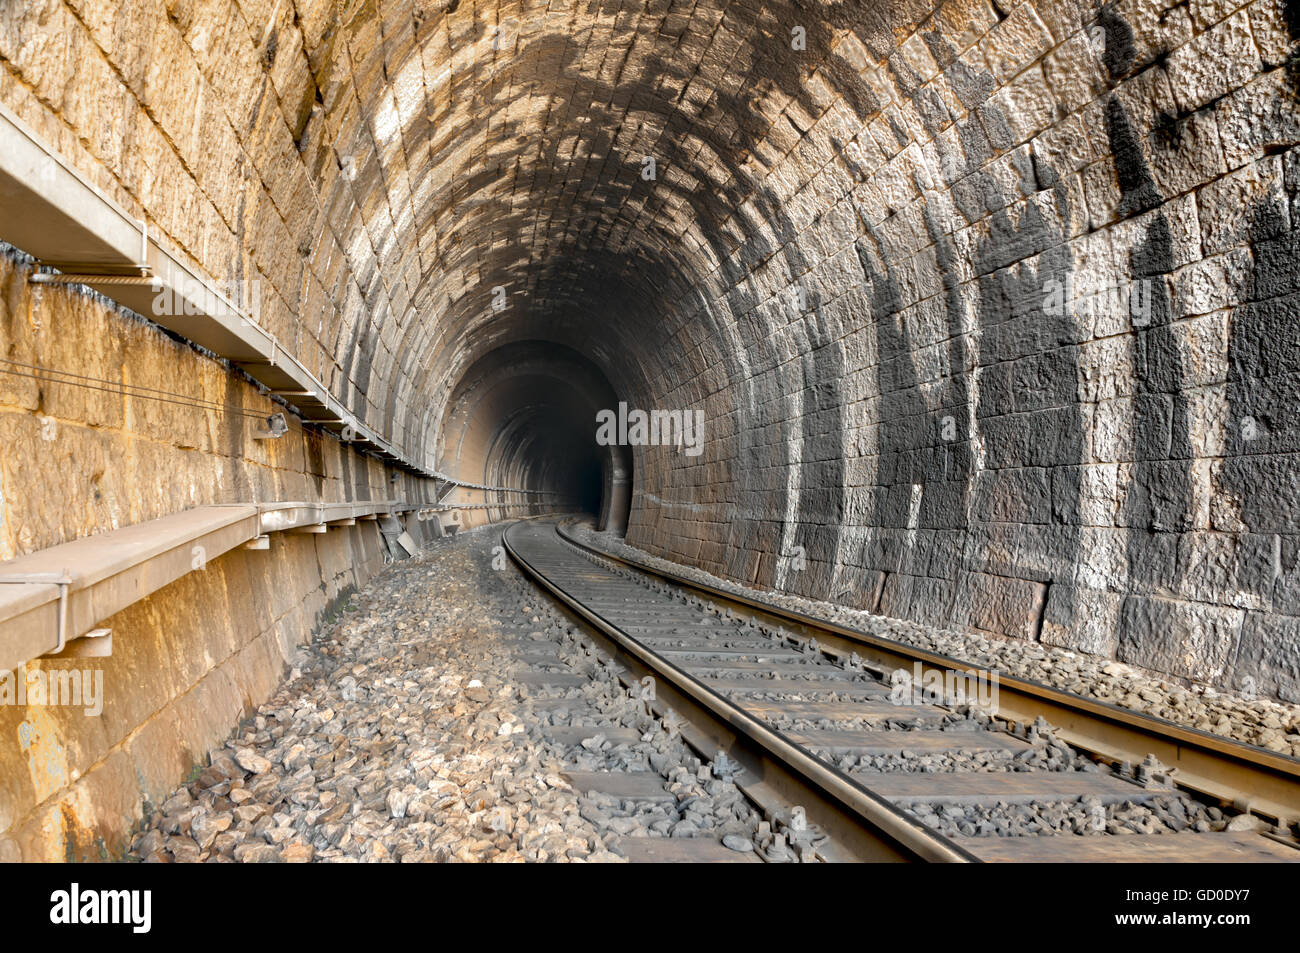 railroad tracks and old tunnel interior in dalmatian hinterland near labin, dalmatia, croatia Stock Photo